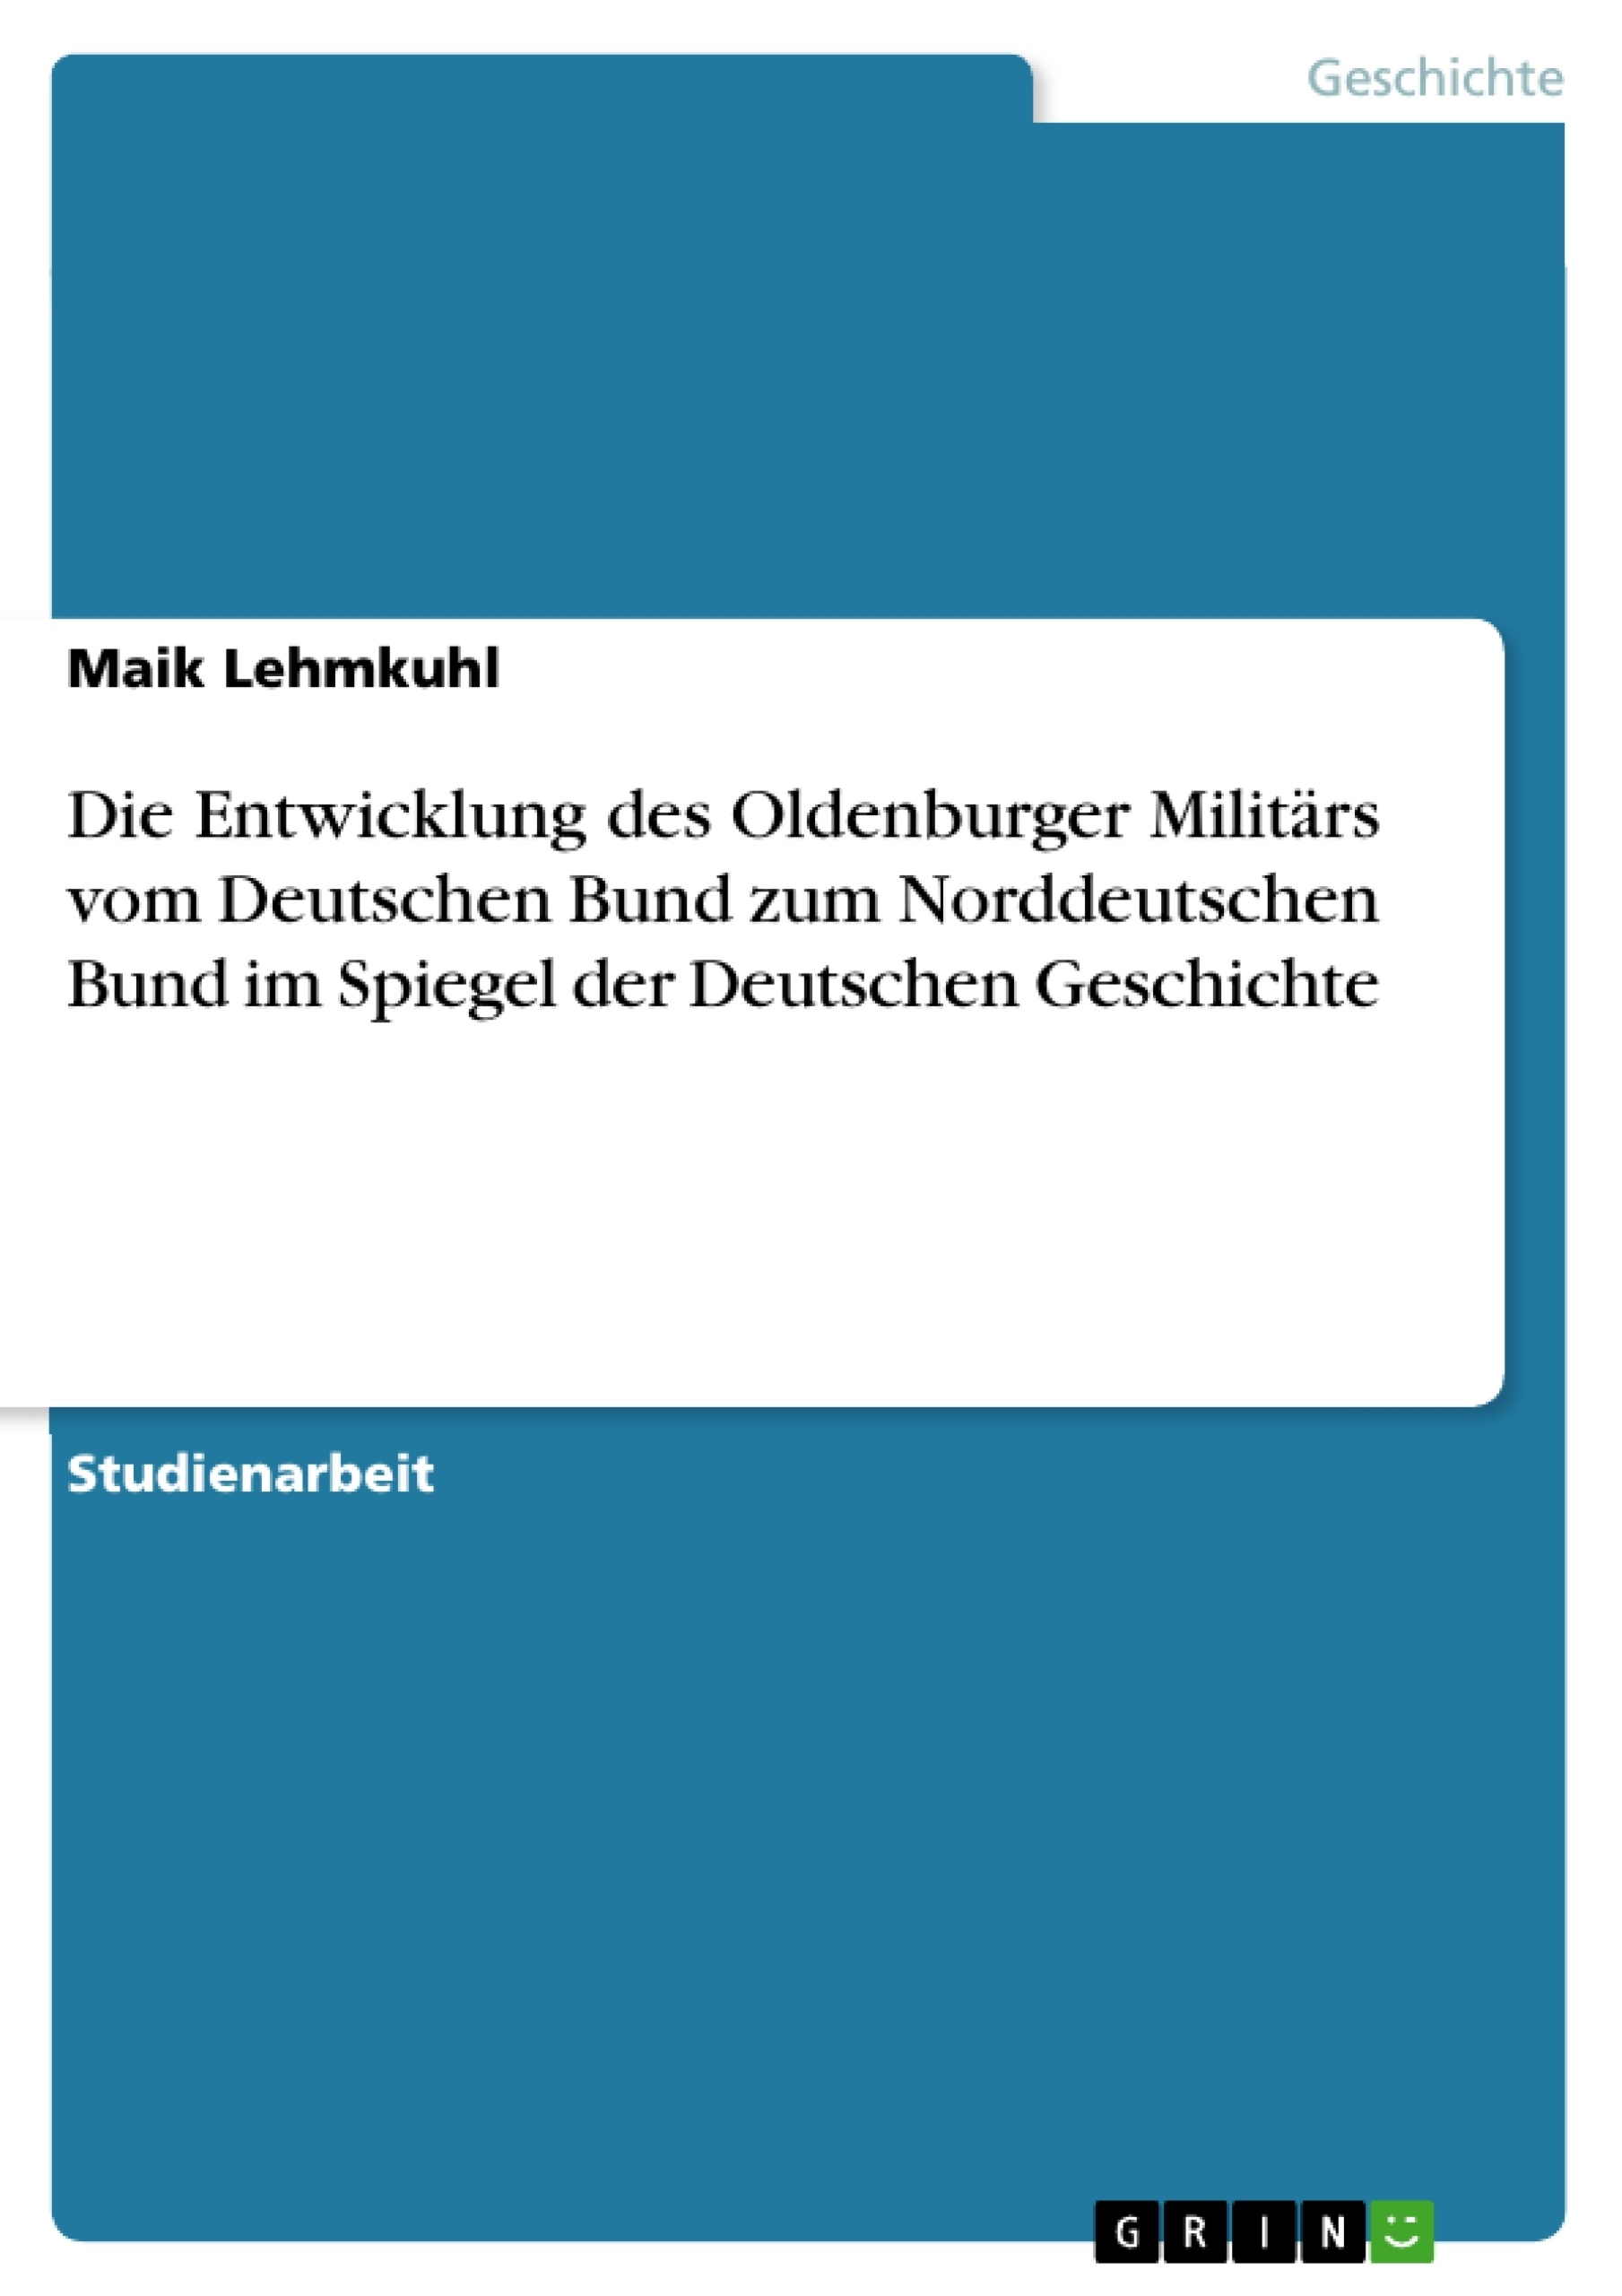 Title: Die Entwicklung des Oldenburger Militärs vom Deutschen Bund zum Norddeutschen Bund im Spiegel der Deutschen Geschichte